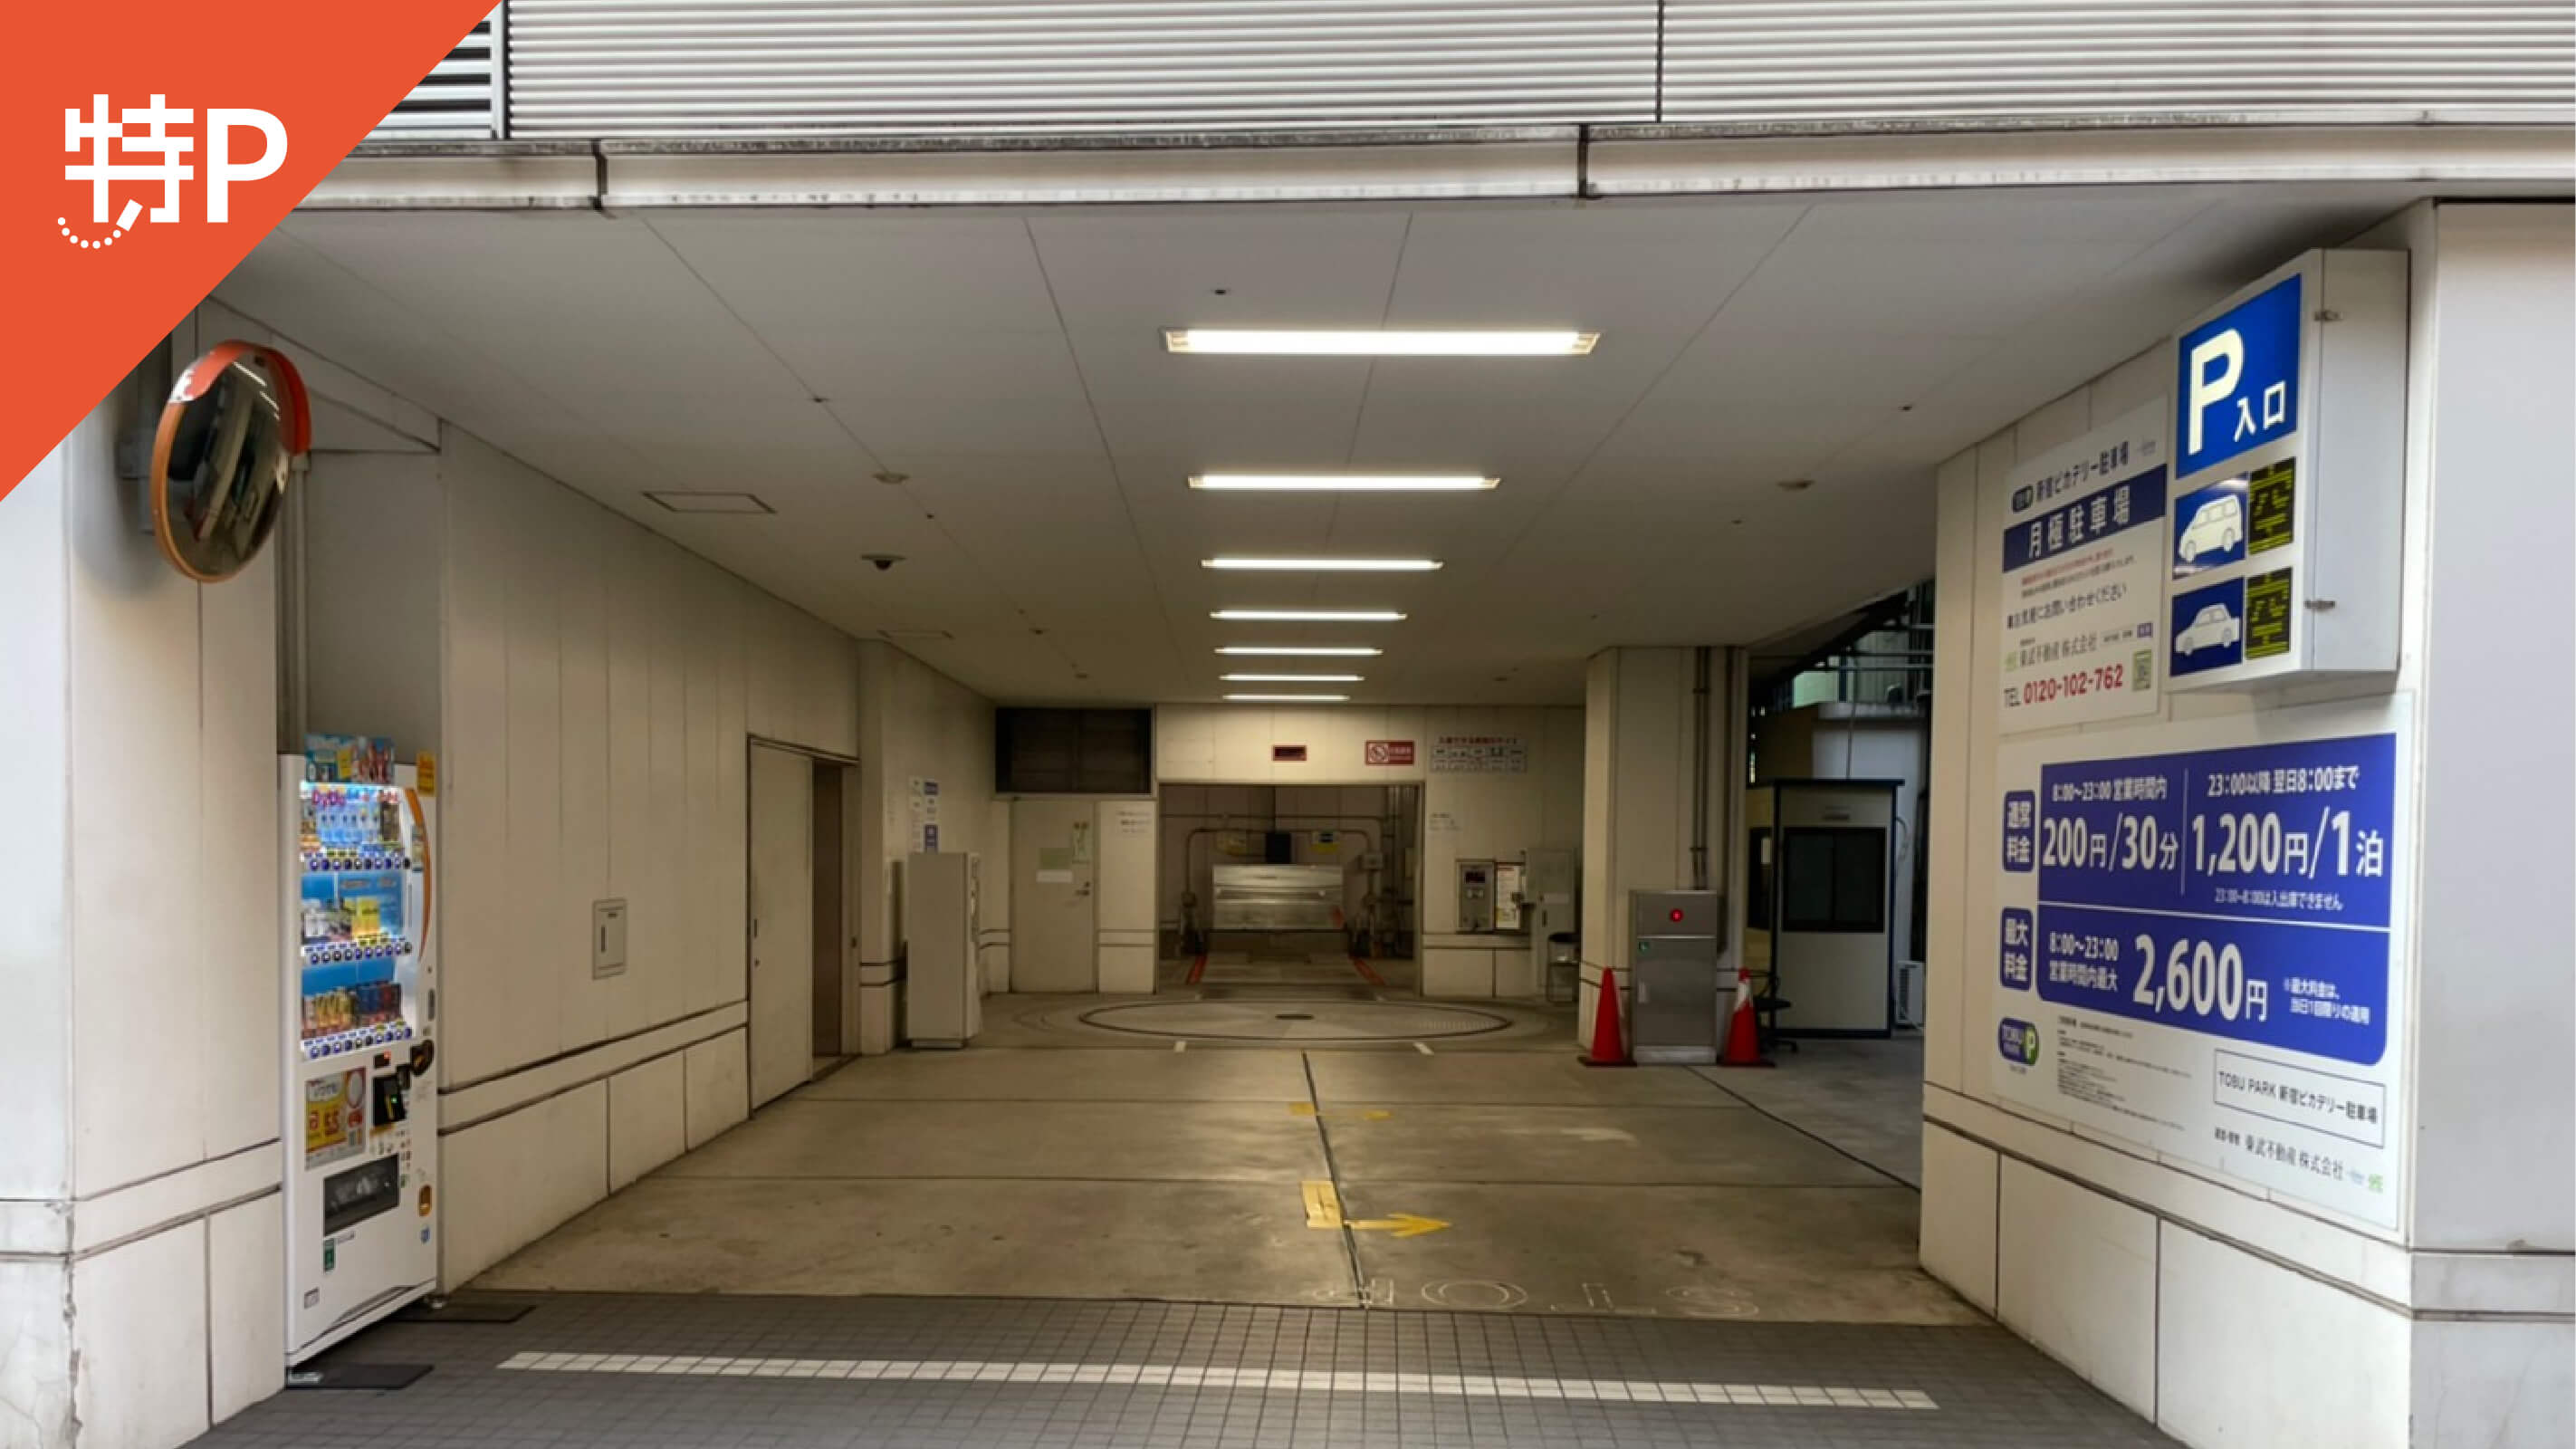 【予約制】特P (機械式)【ロールーフ】新宿3-15-15駐車場の画像1